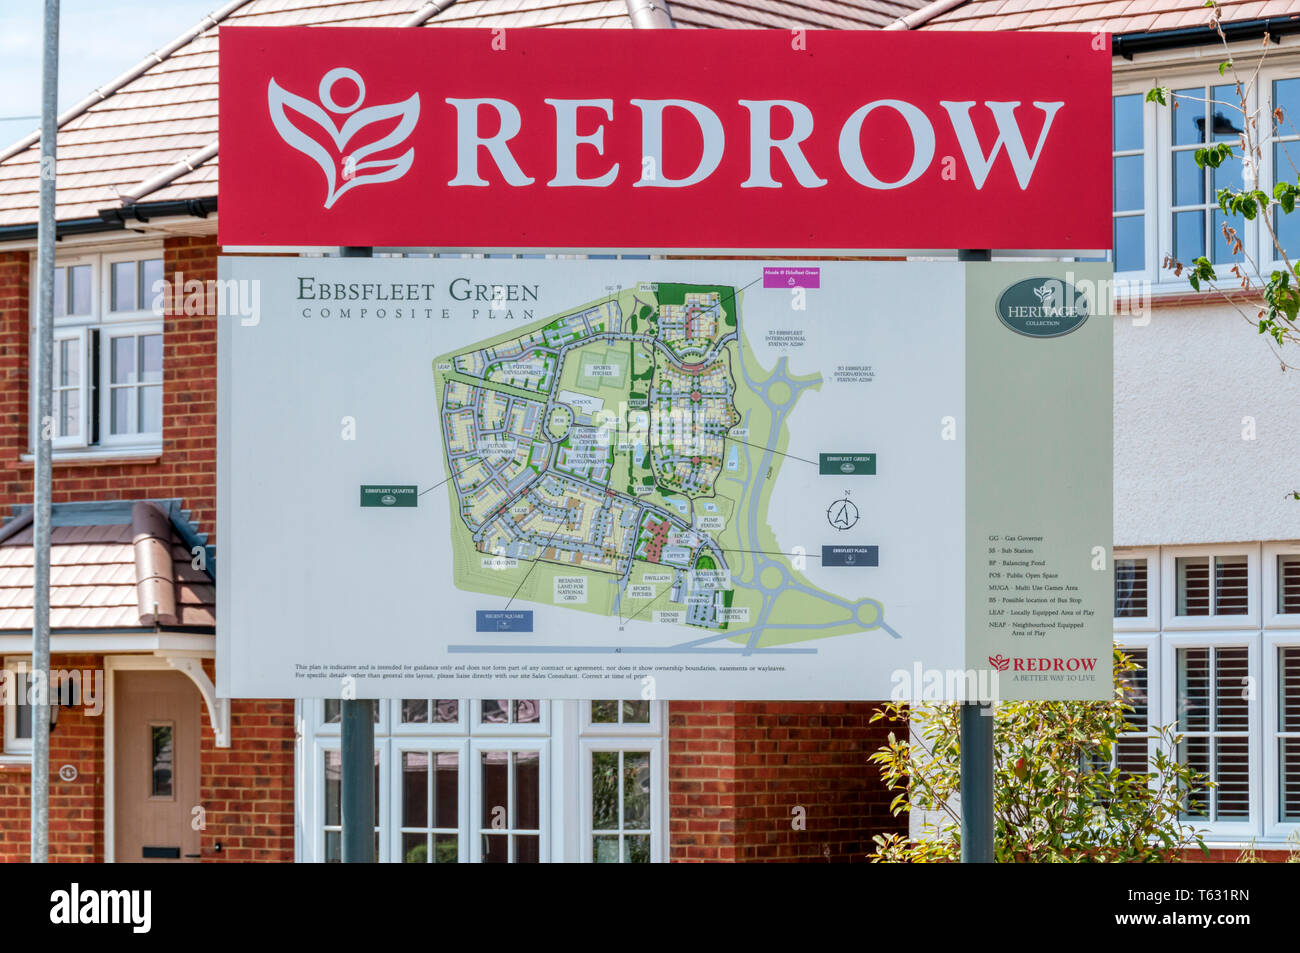 Un signe montre une carte de l'habitation à Ebbsfleet Redrow développement vert, une partie de la Ville Jardin d'Ebbsfleet dans le Kent. Banque D'Images